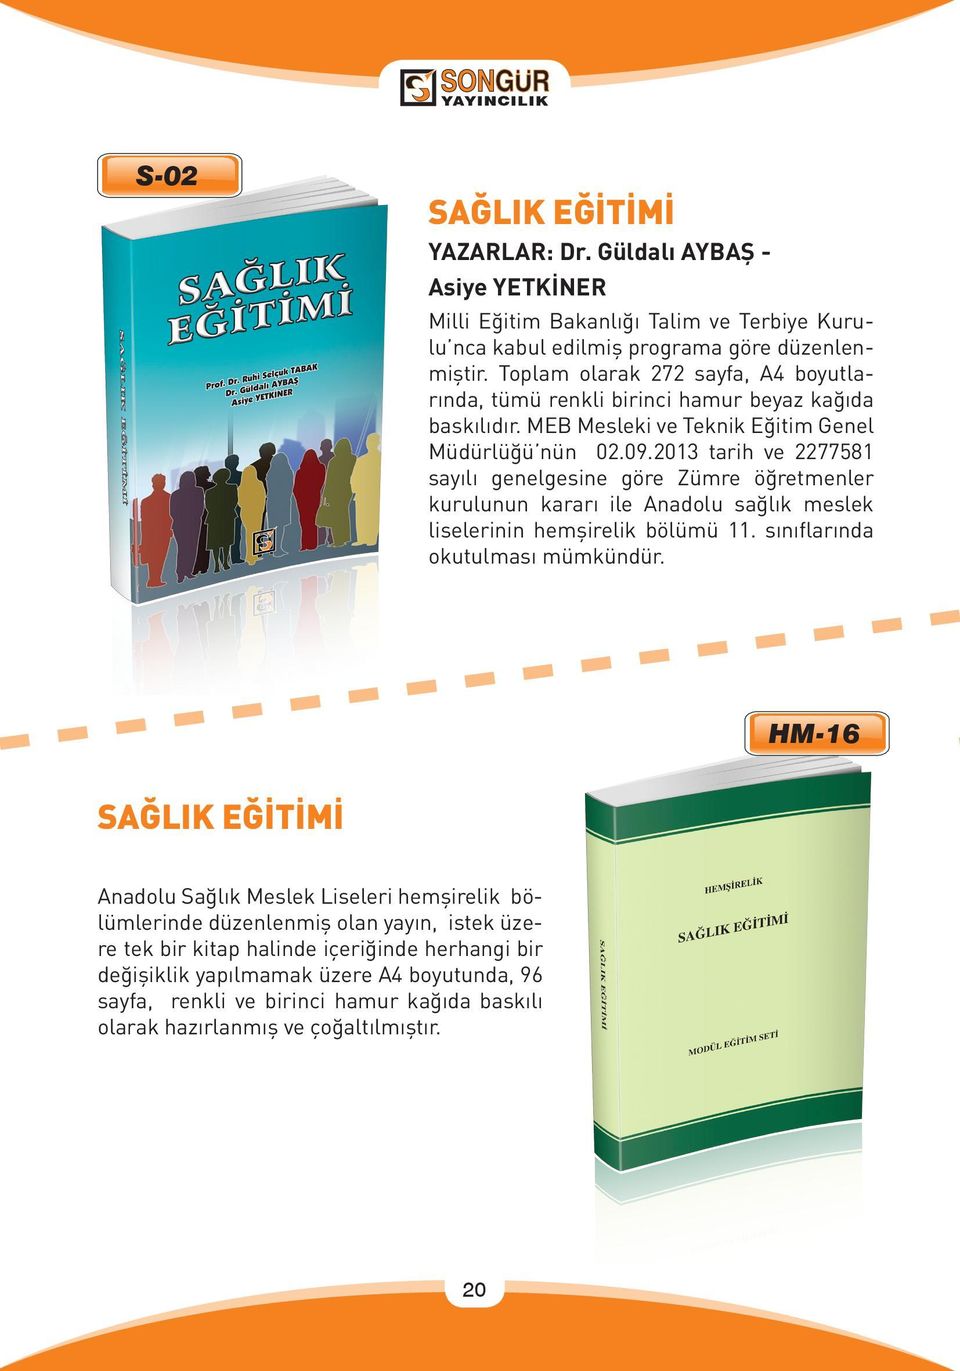 2013 tarih ve 2277581 sayılı genelgesine göre Zümre öğretmenler kurulunun kararı ile Anadolu sağlık meslek liselerinin hemşirelik bölümü 11. sınıflarında okutulması mümkündür.